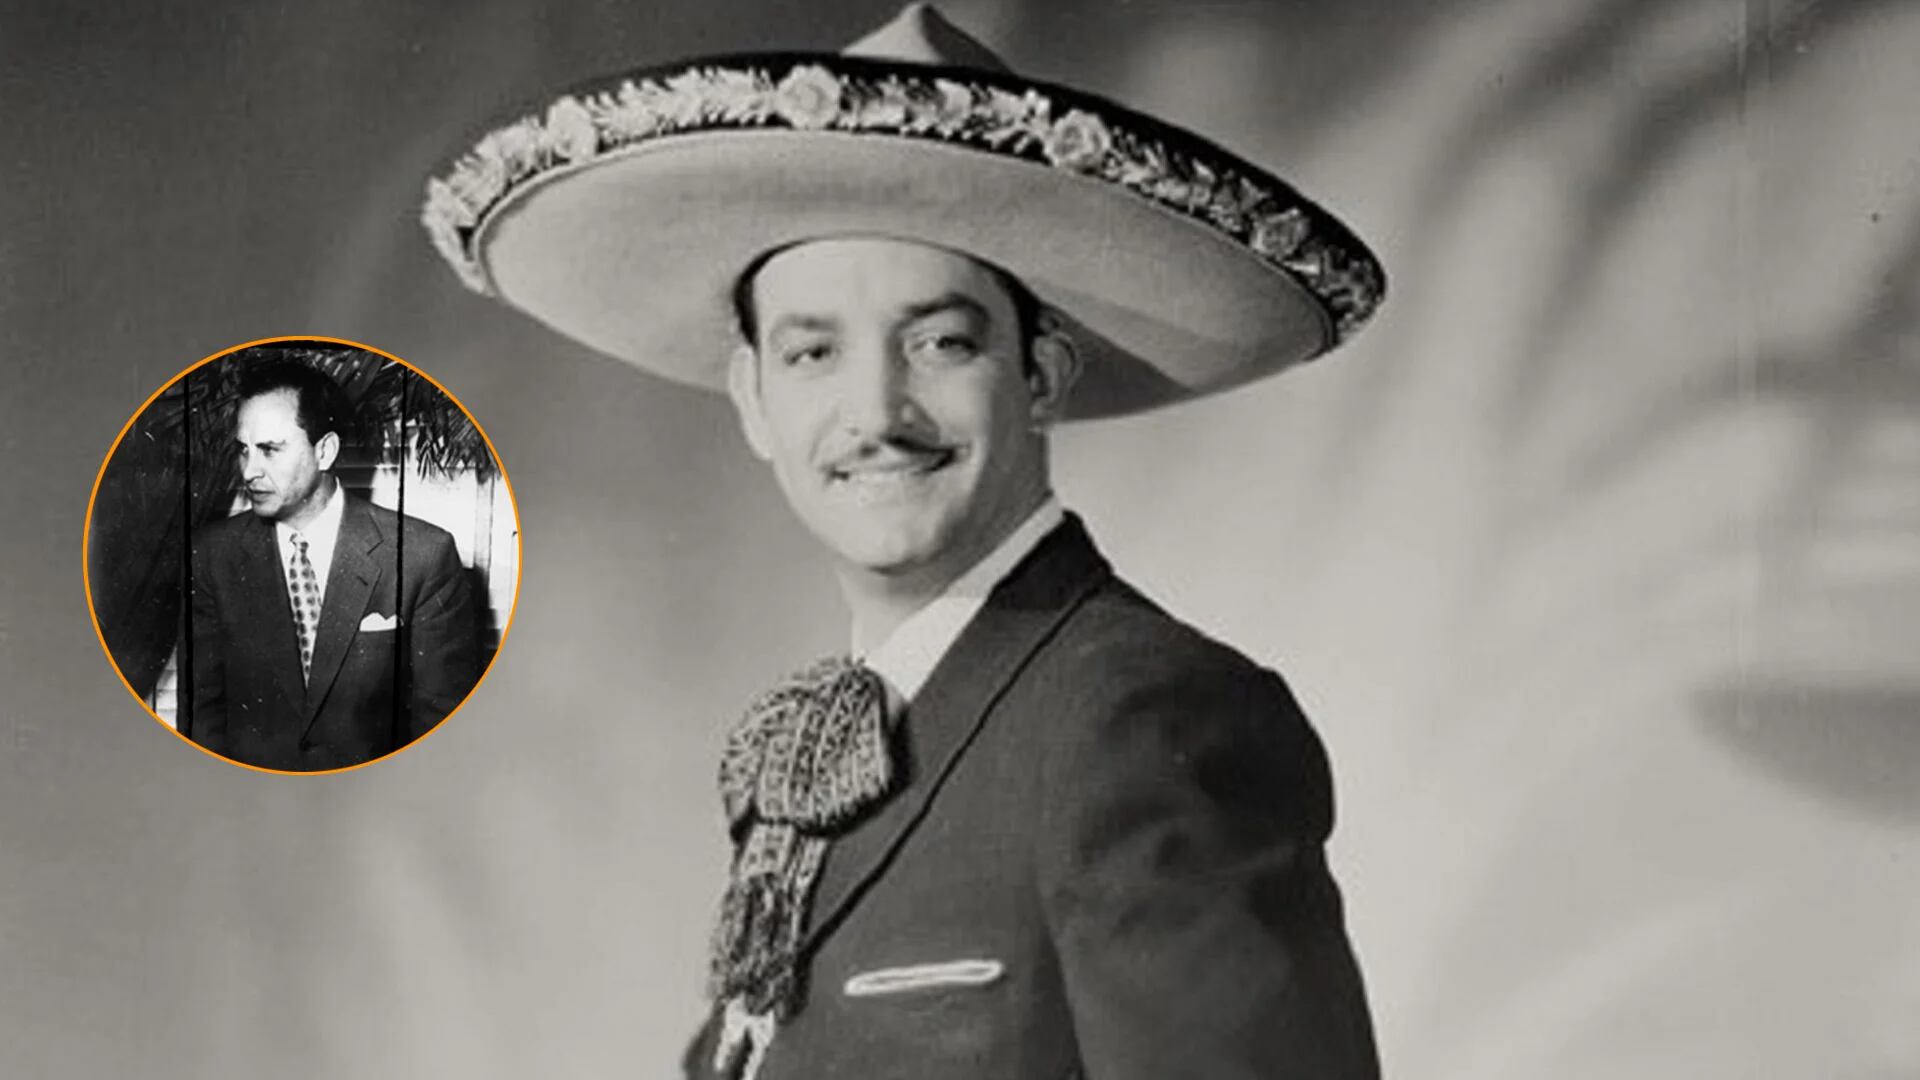 El hermano de un presidente mexicano que fue actor y amigo de Jorge Negrete